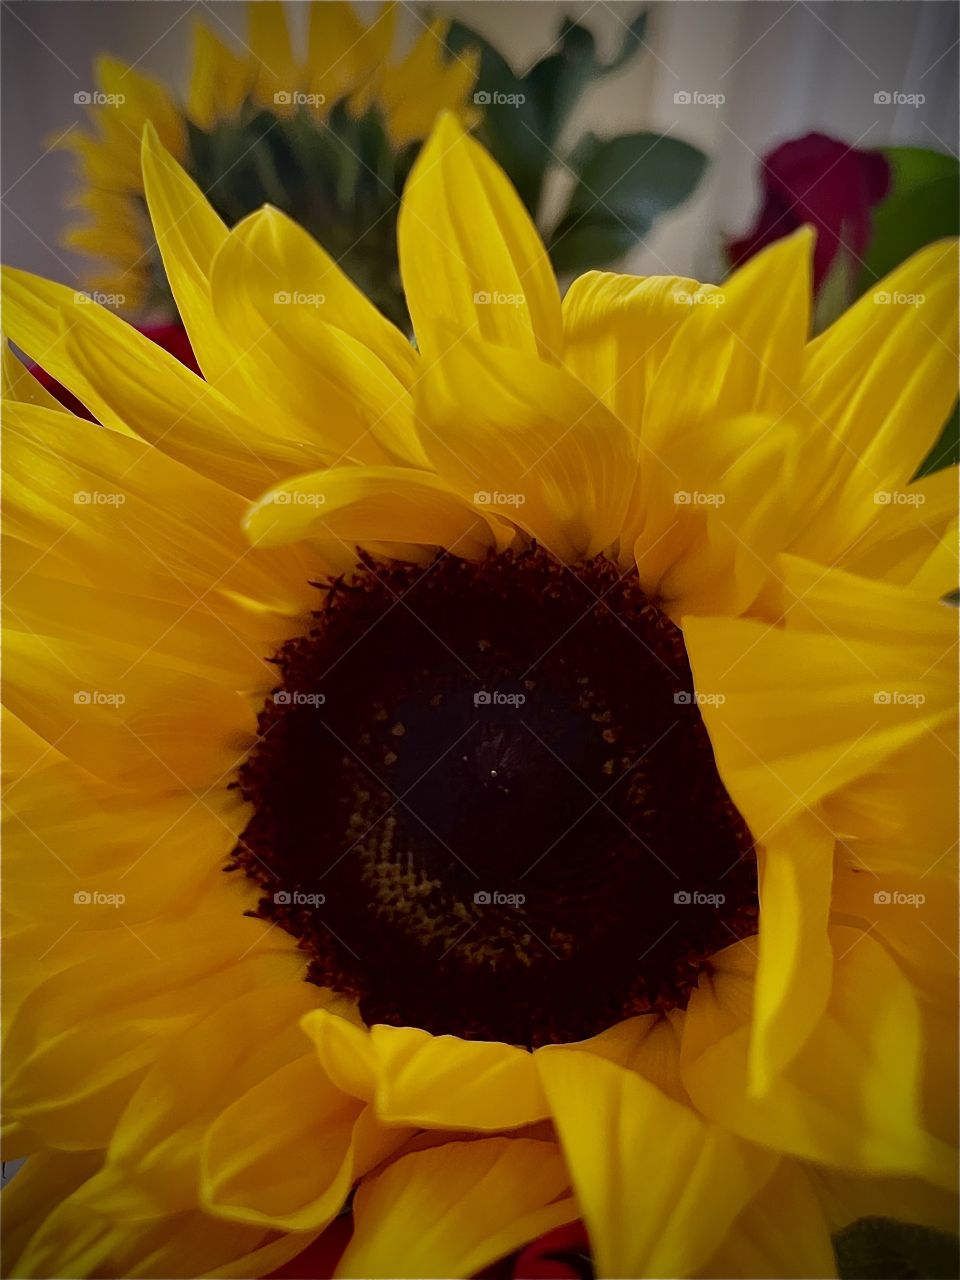 Just a beautiful sun flower 